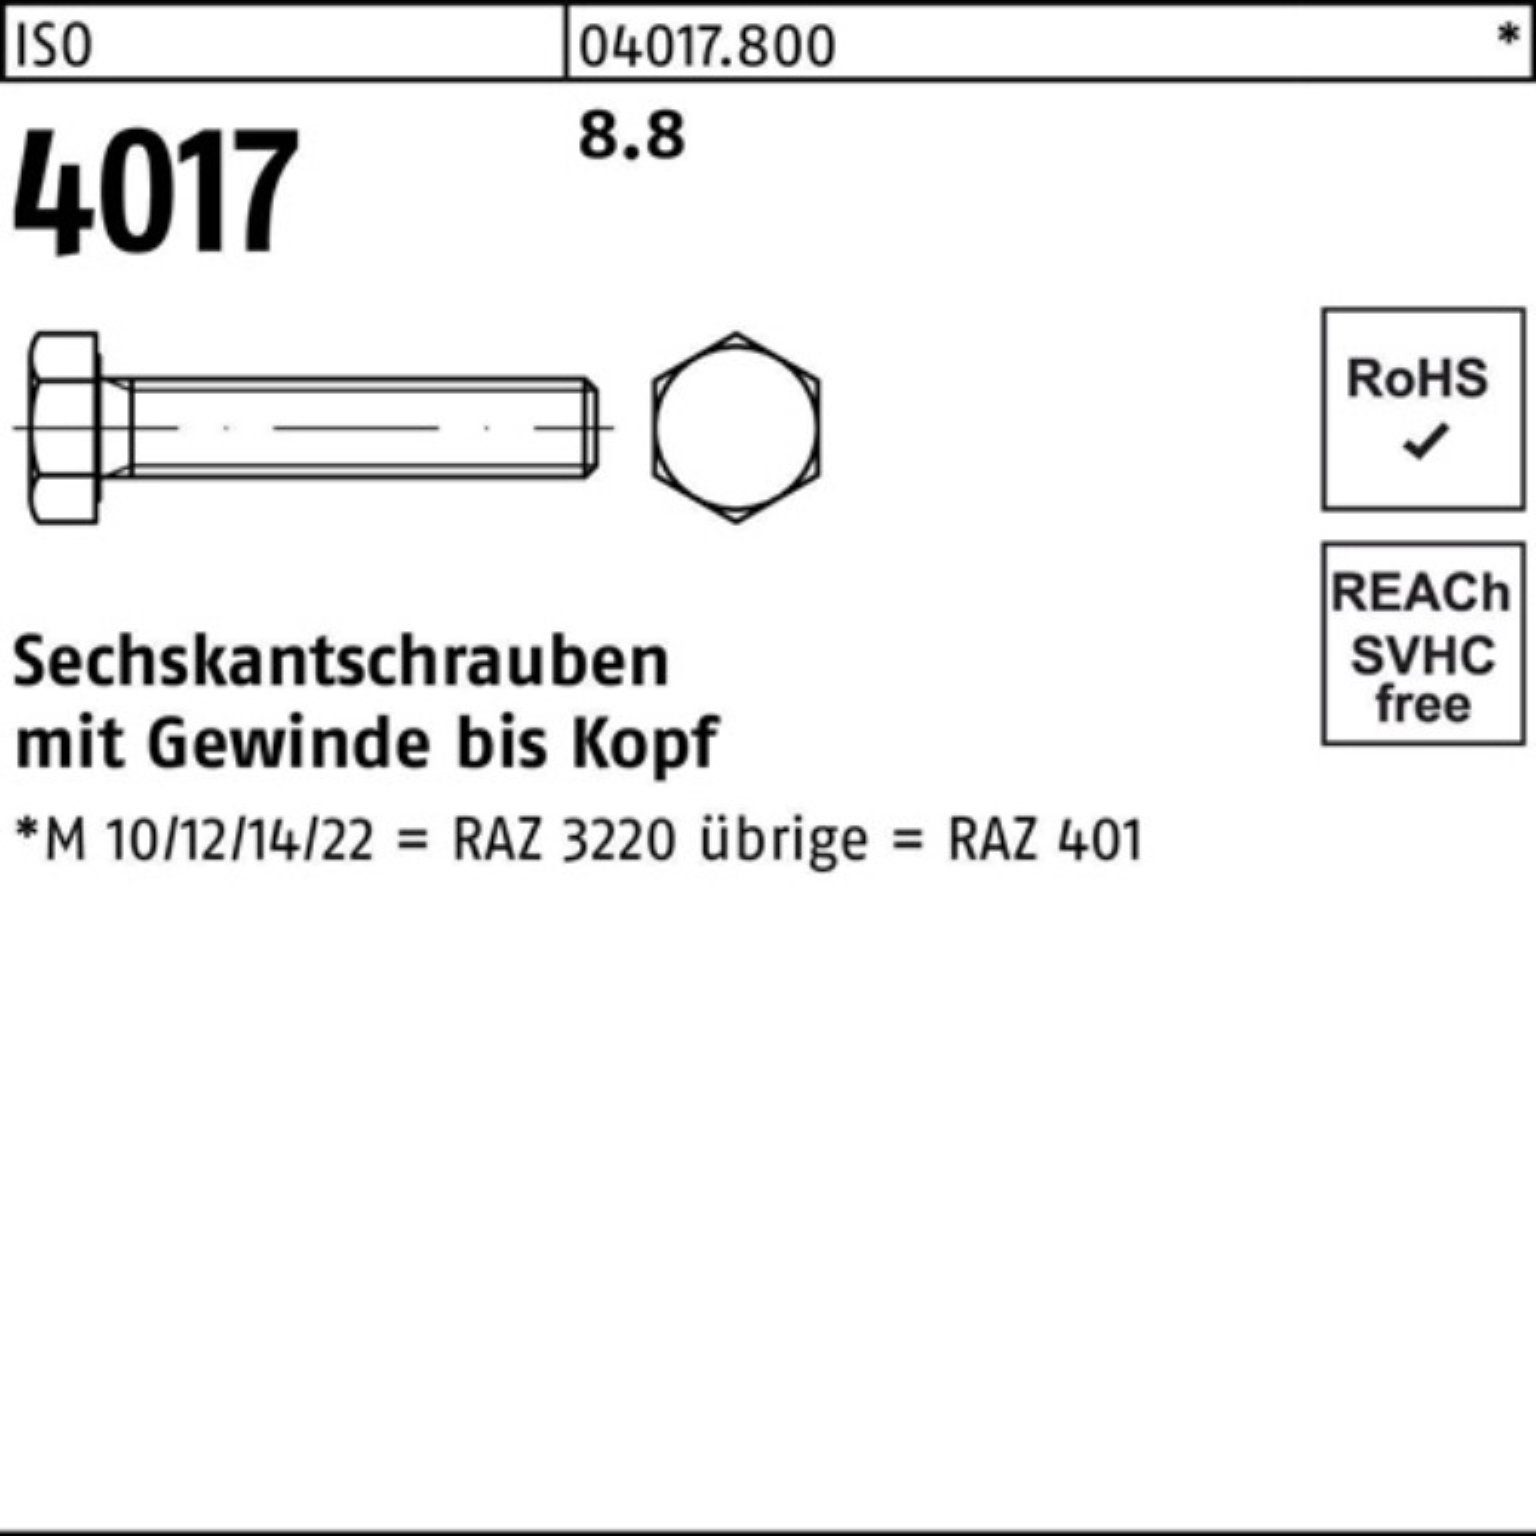 M30x 1 4017 8.8 Pack 100er 600 ISO Sechskantschraube Bufab Sechskantschraube ISO 401 VG Stück